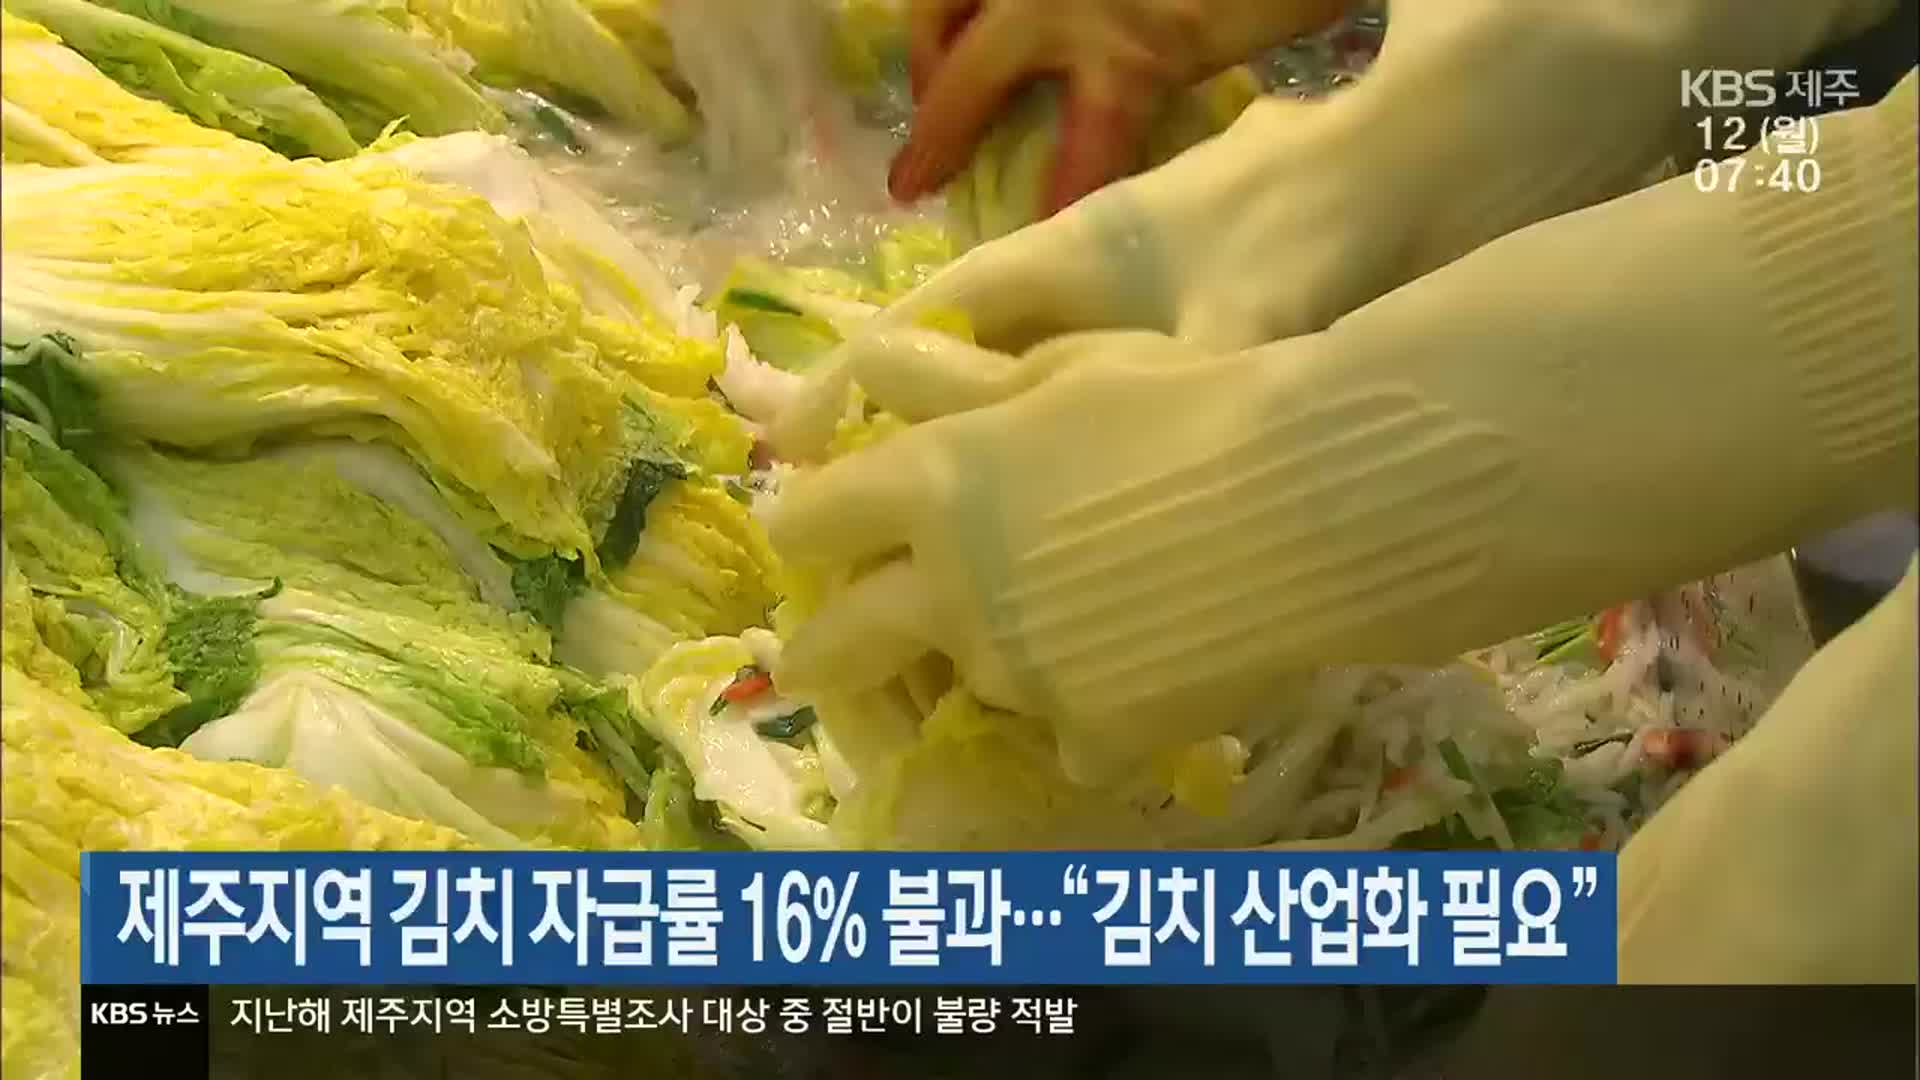 제주지역 김치 자급률 16% 불과…“김치 산업화 필요”